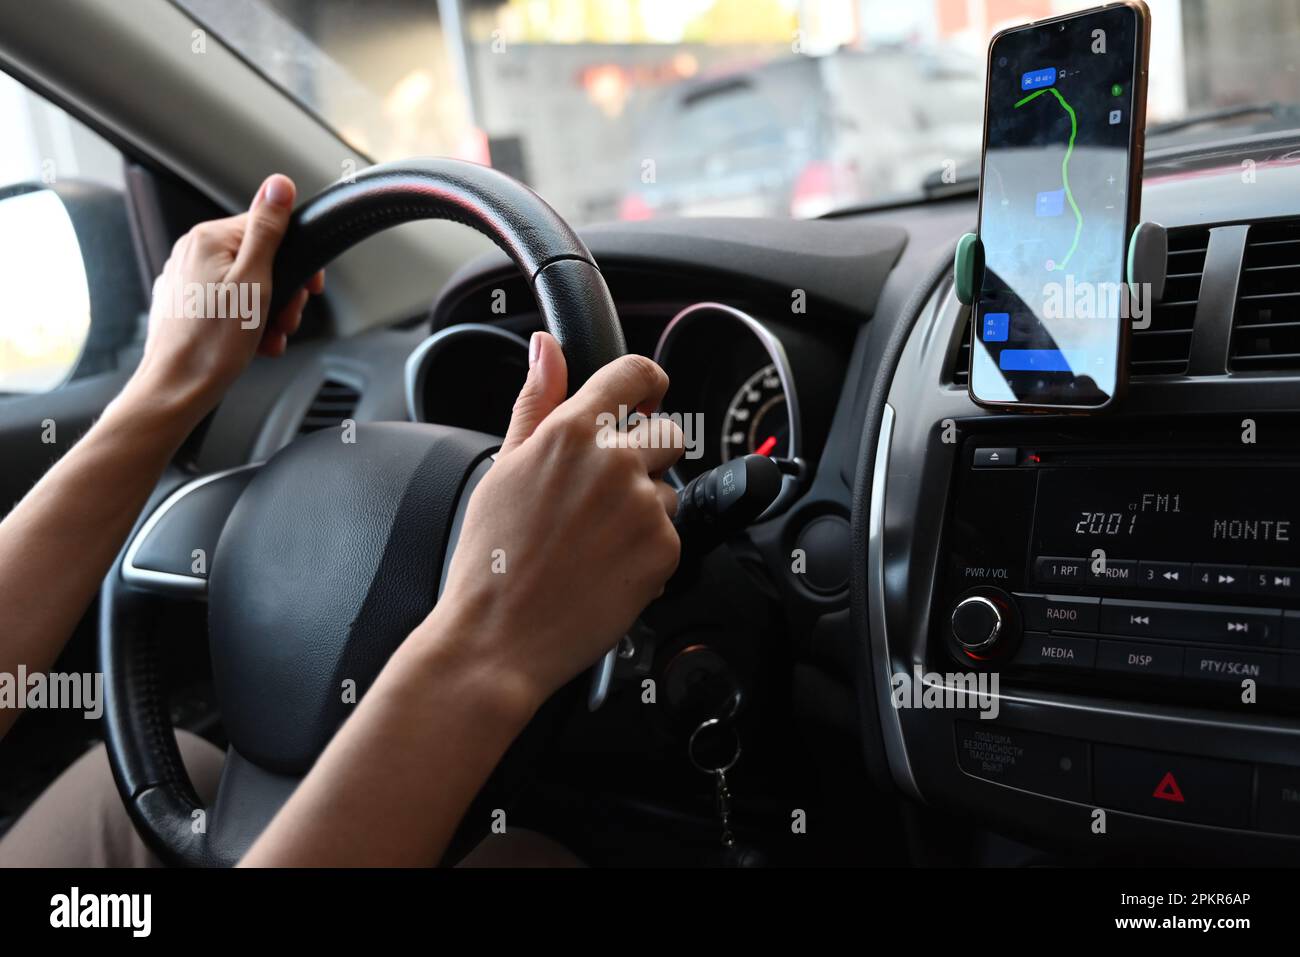 mains de femme tenant le volant pendant la conduite d'une voiture, lavage de voiture, chemin, file d'attente, navigateur Banque D'Images